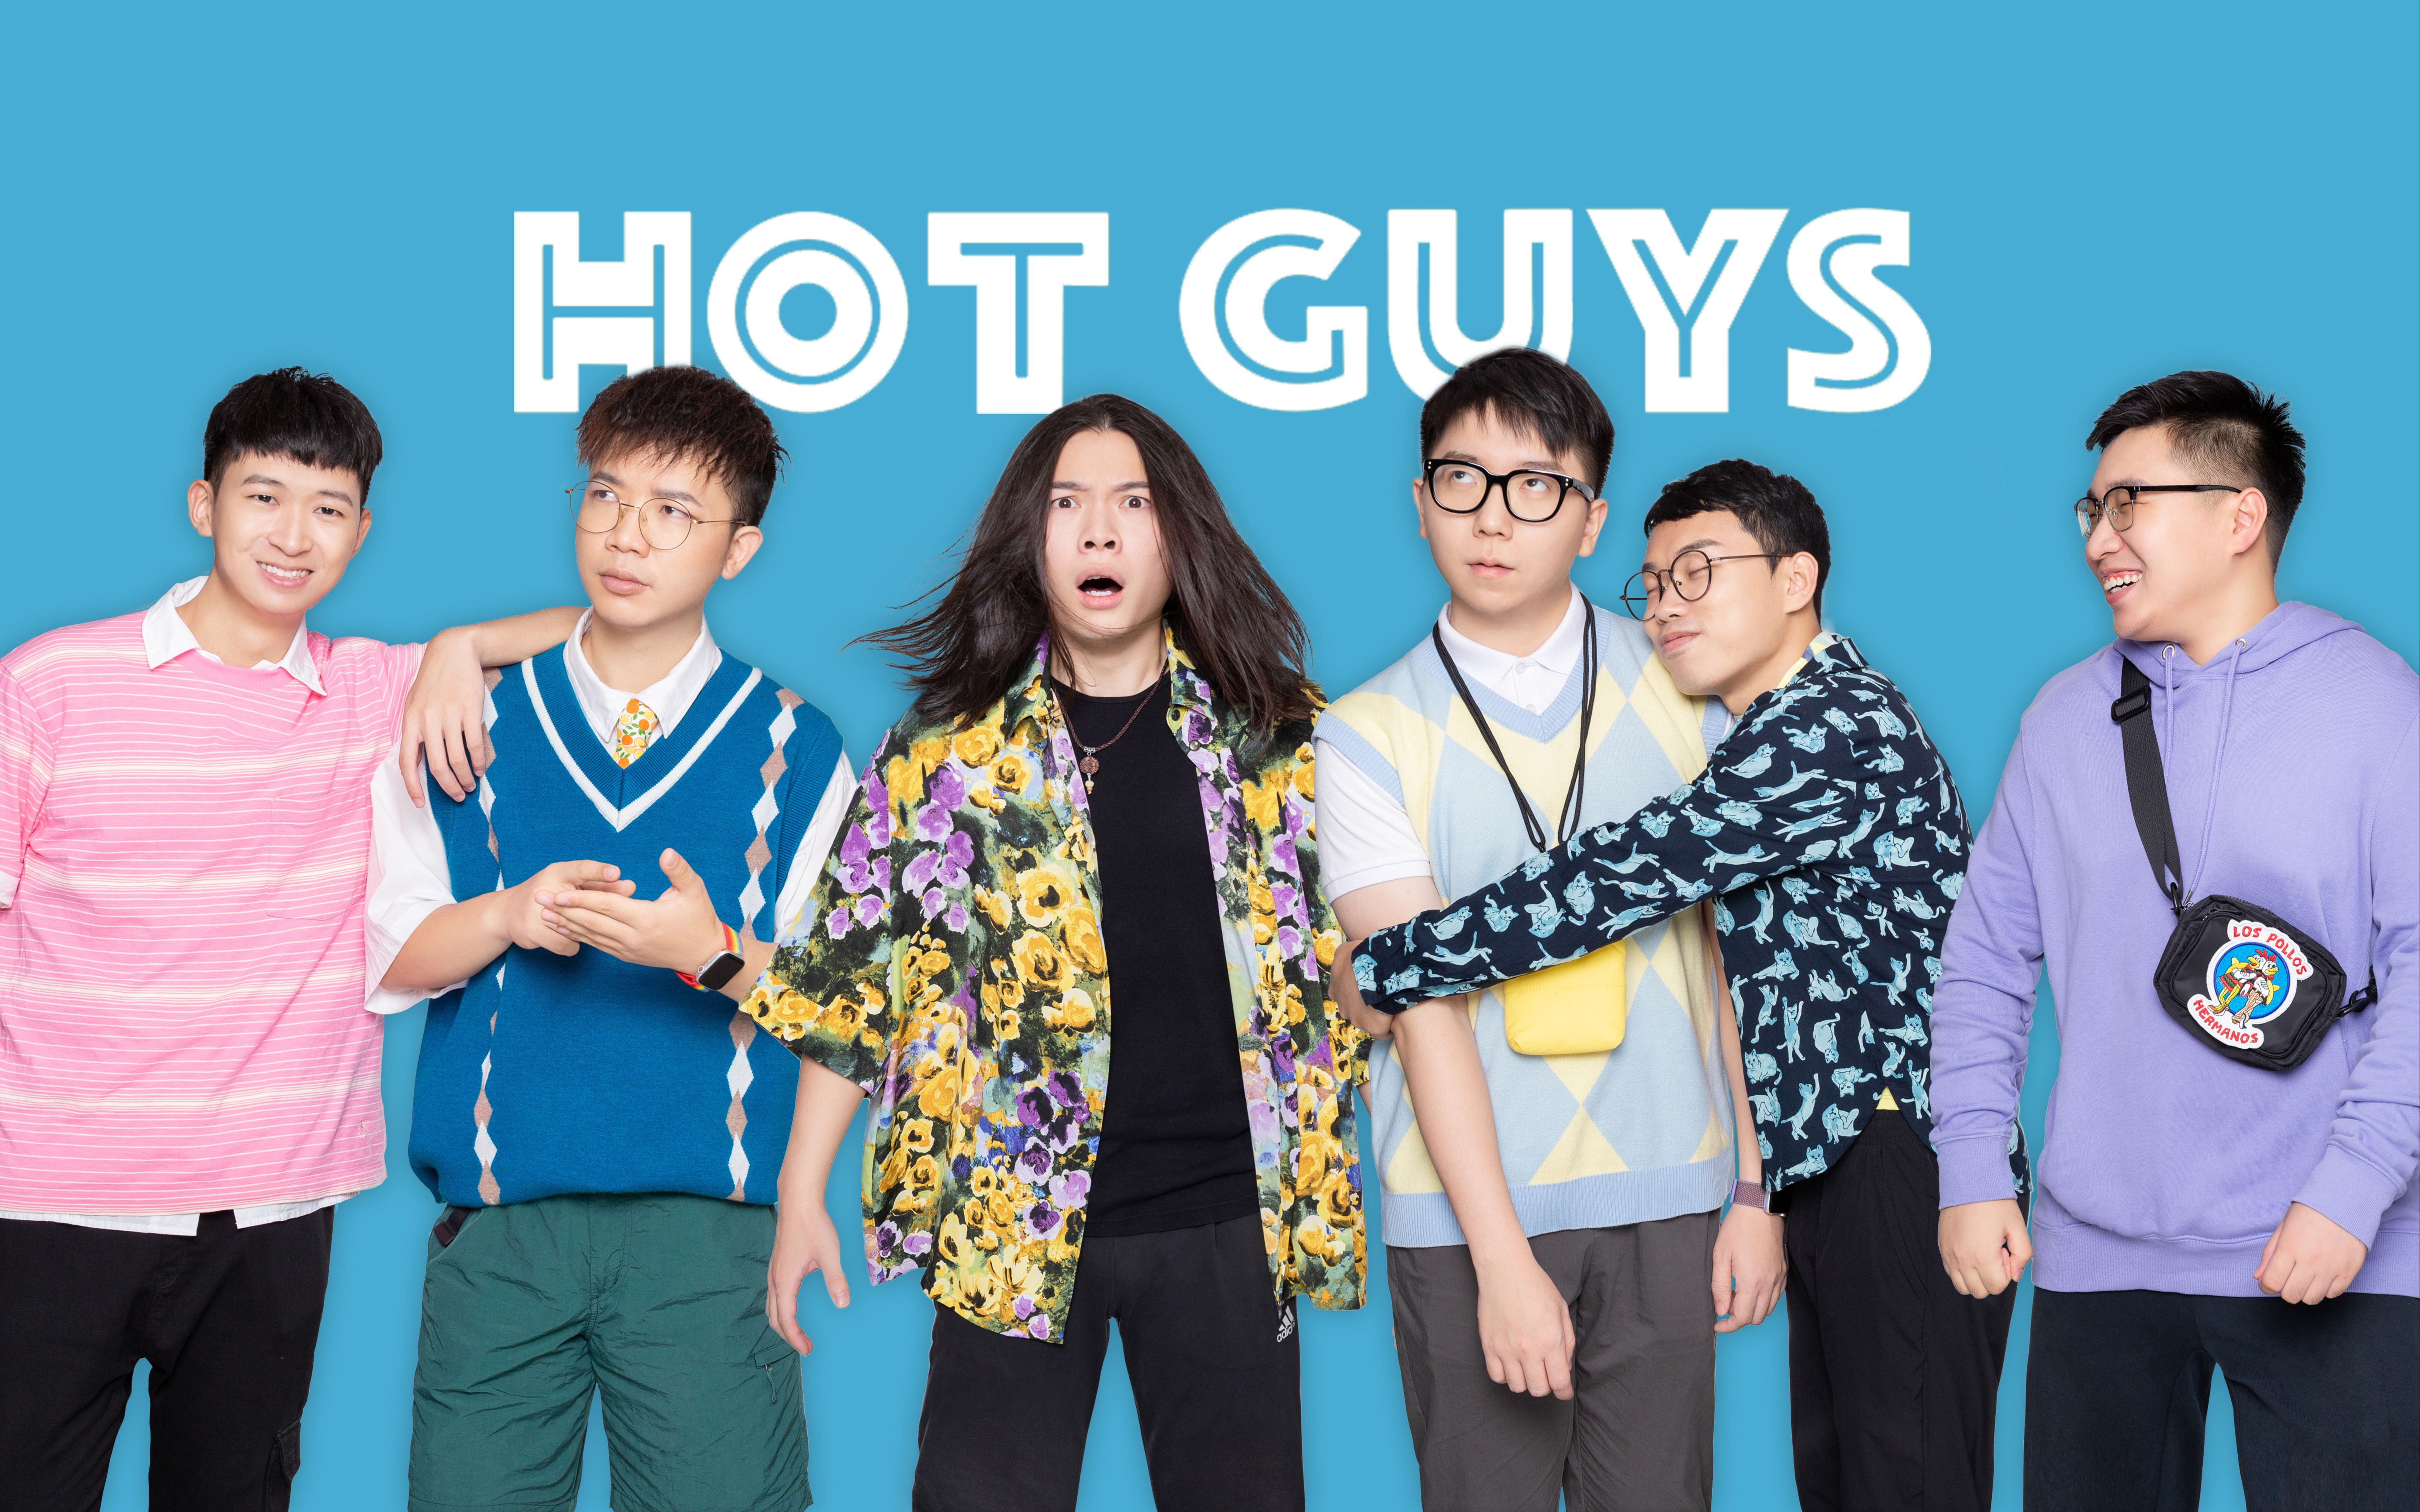 【官宣】从现在开始，请叫我们Hot Guys！